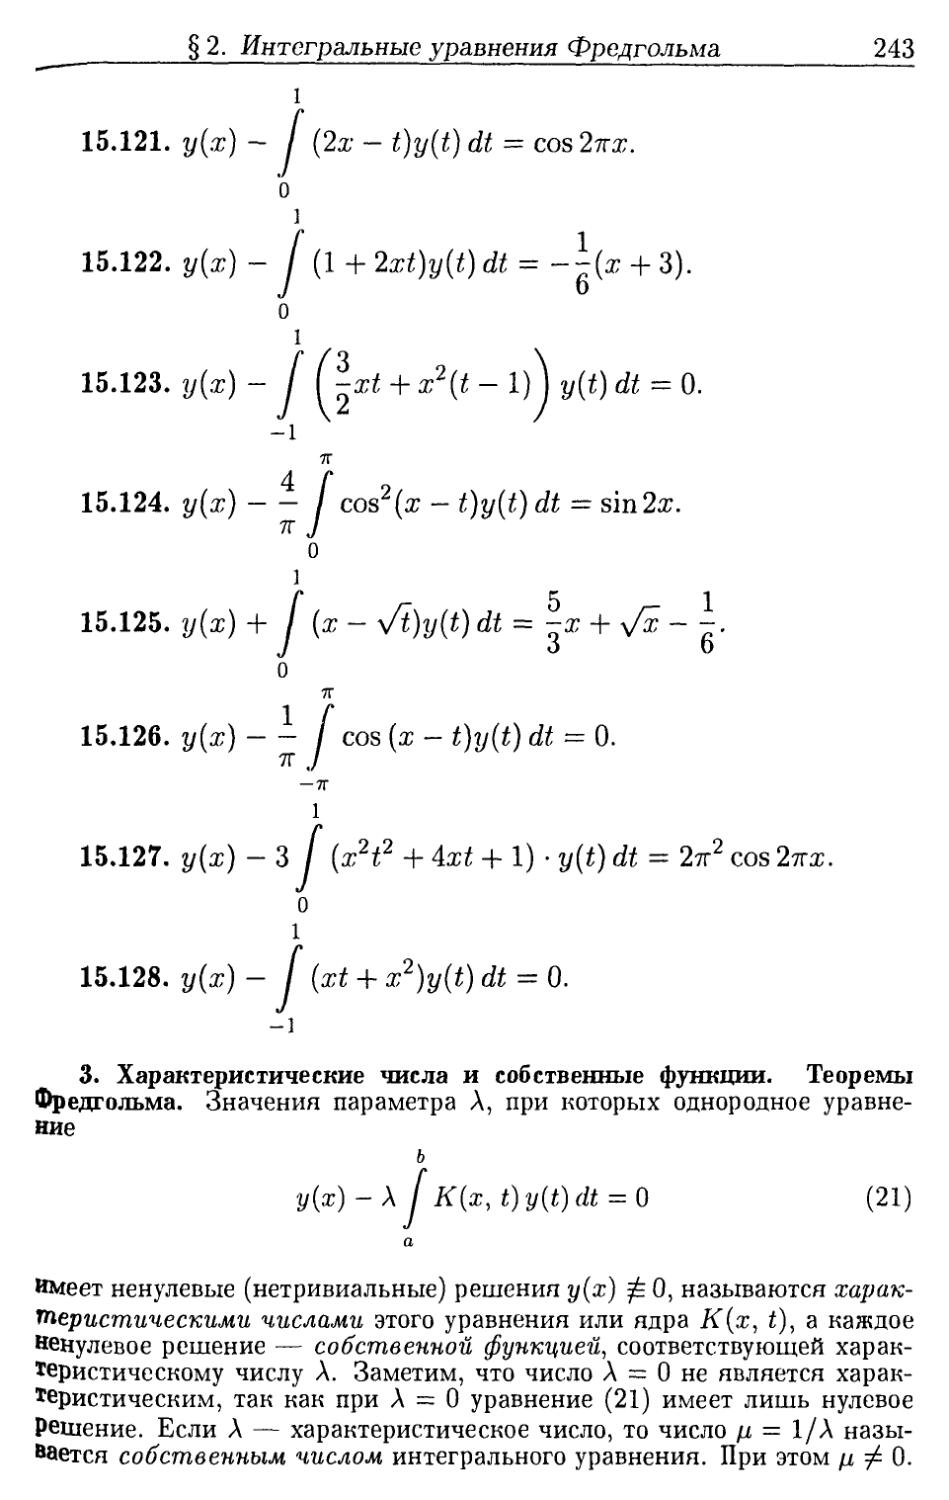 3. Характеристические числа и собственные функции. Теоремы Фредгольма